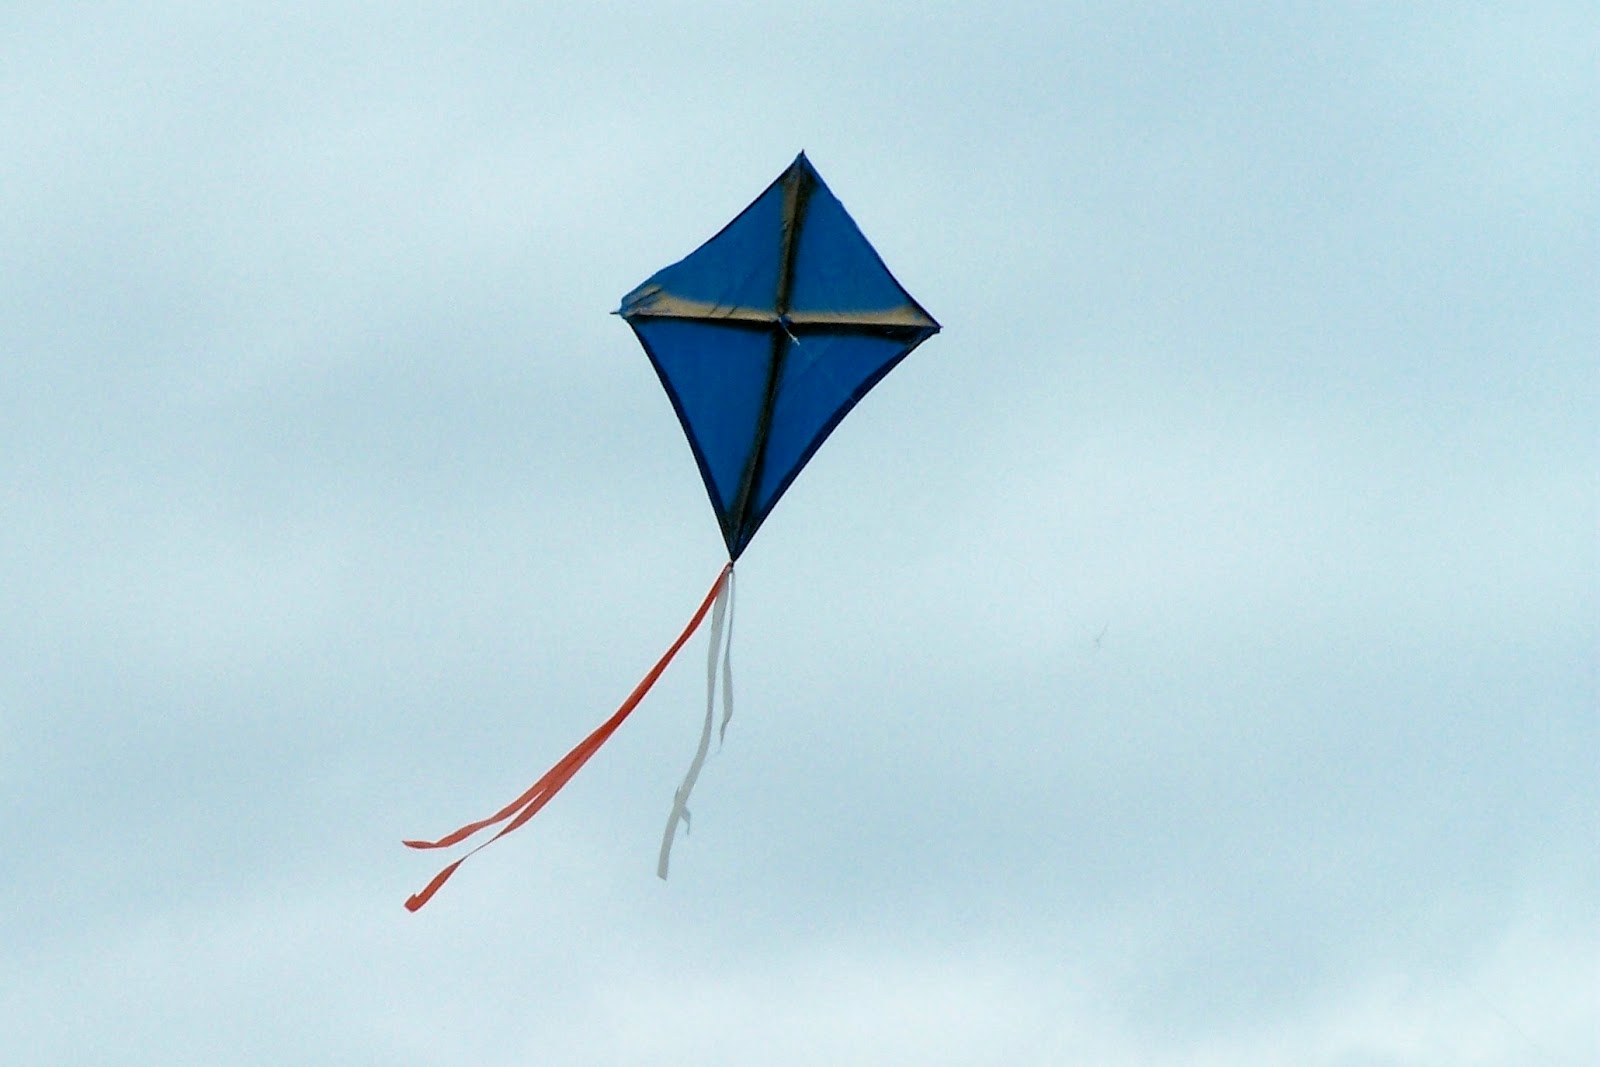 Descriptive essay on kite flying